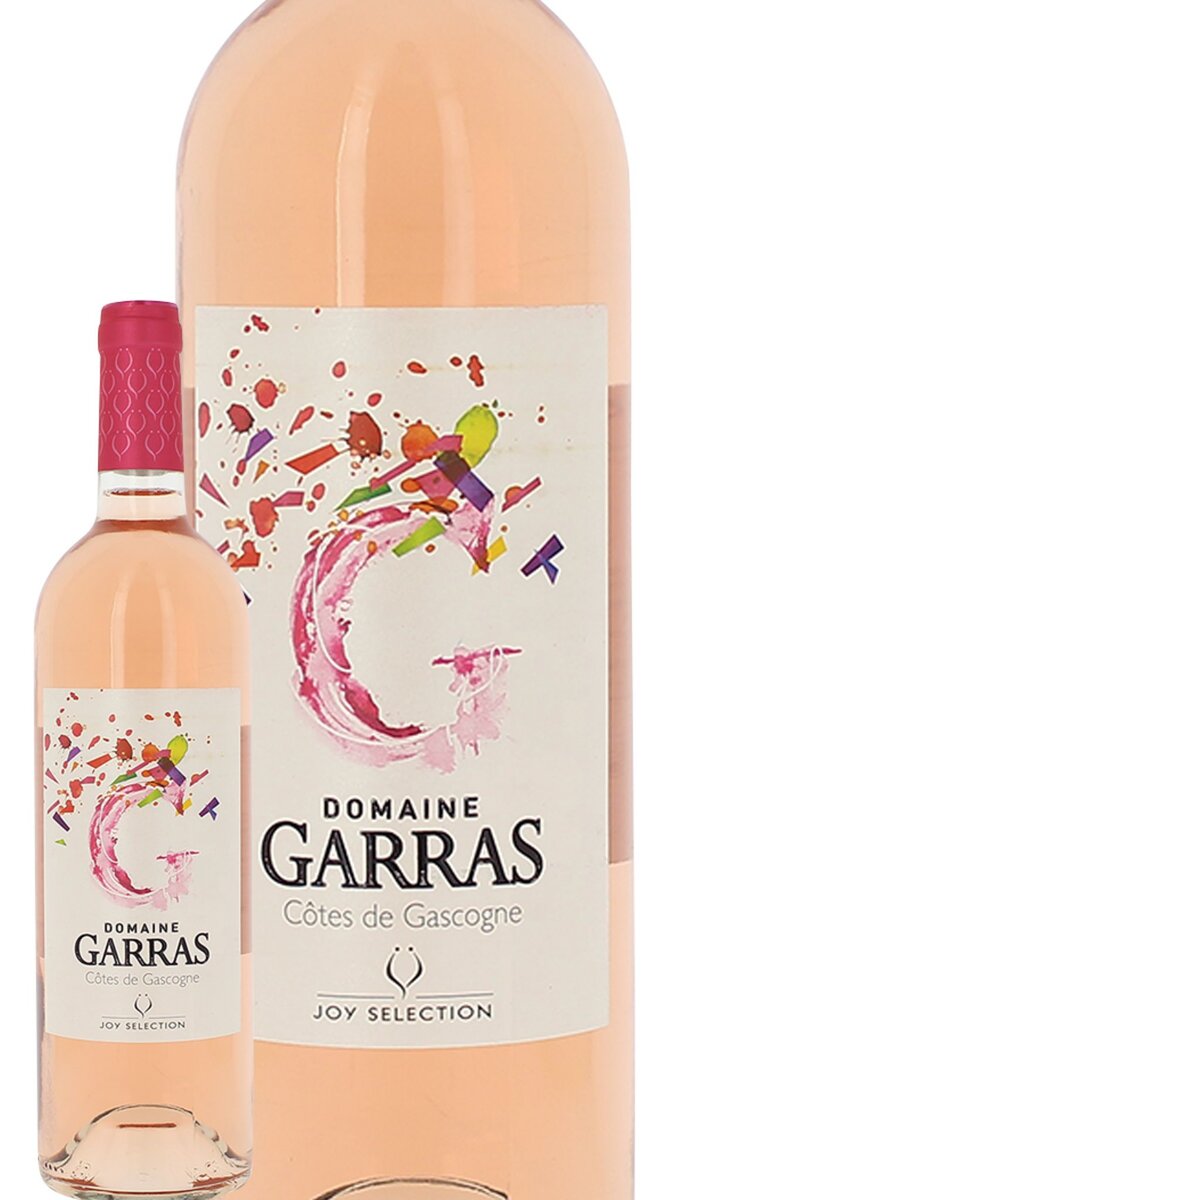 Domaine Garras IGP Côtes de Gascogne Rosé 2015